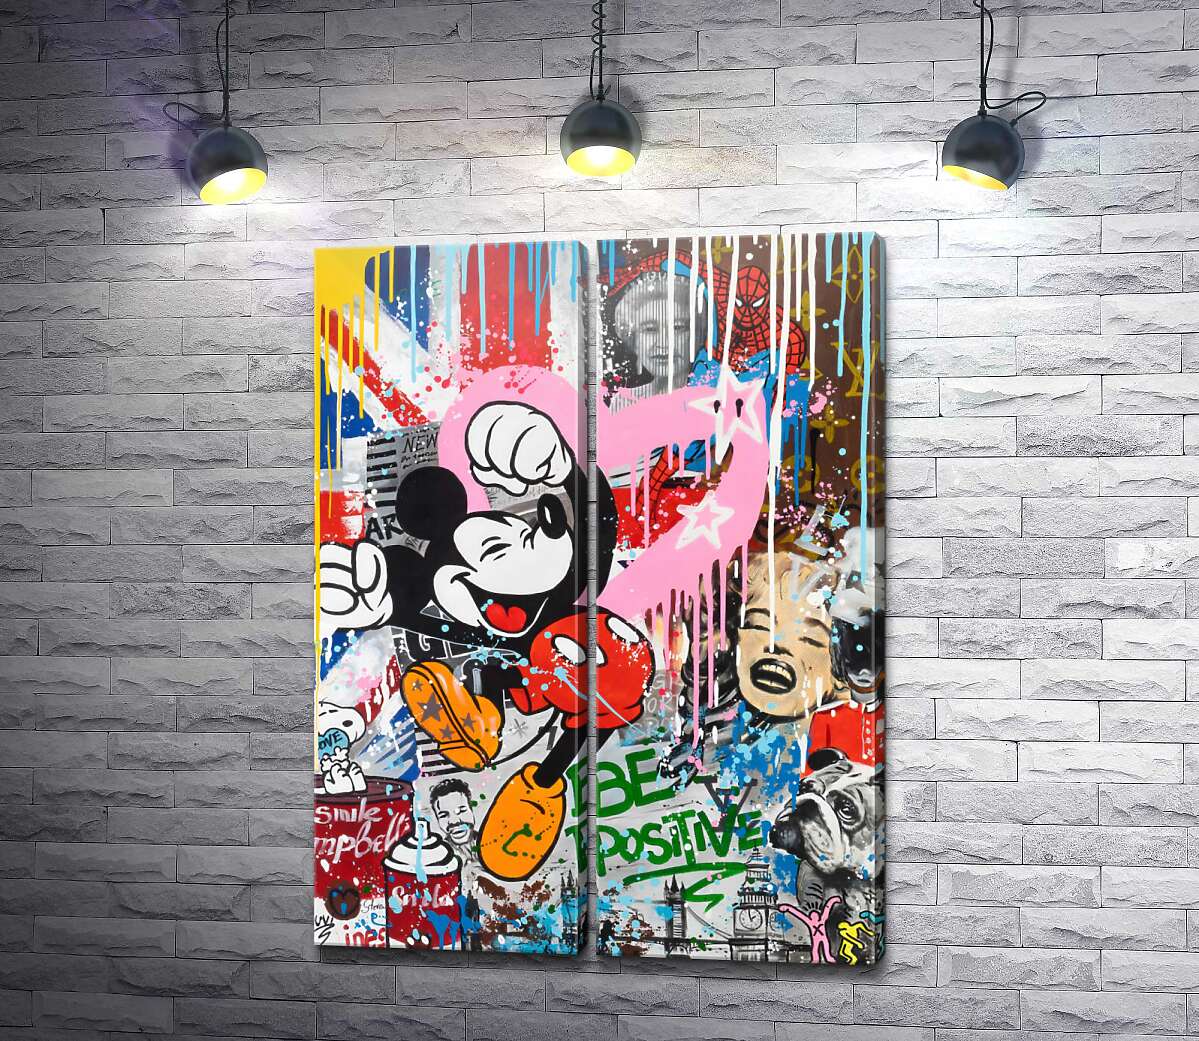 модульная картина Арт граффити с Микки Маусом: Be positive